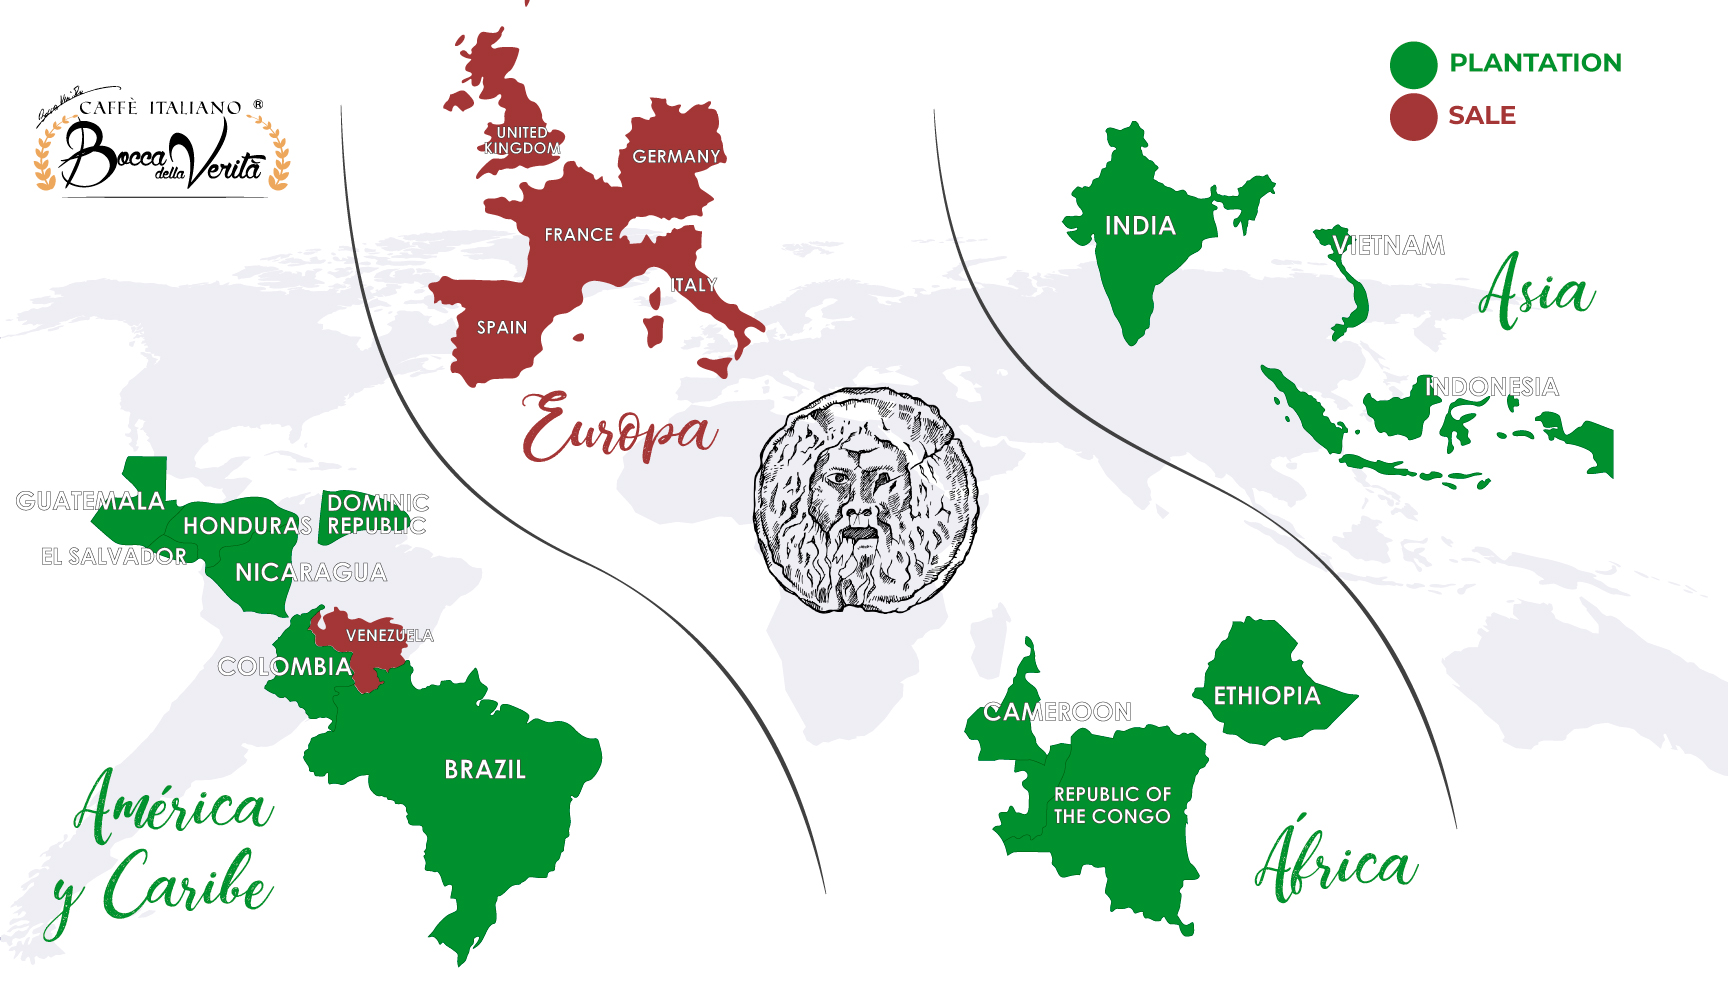 Mappa delle nostre piantagioni di caffè italiane e dei luoghi in cui viene venduto